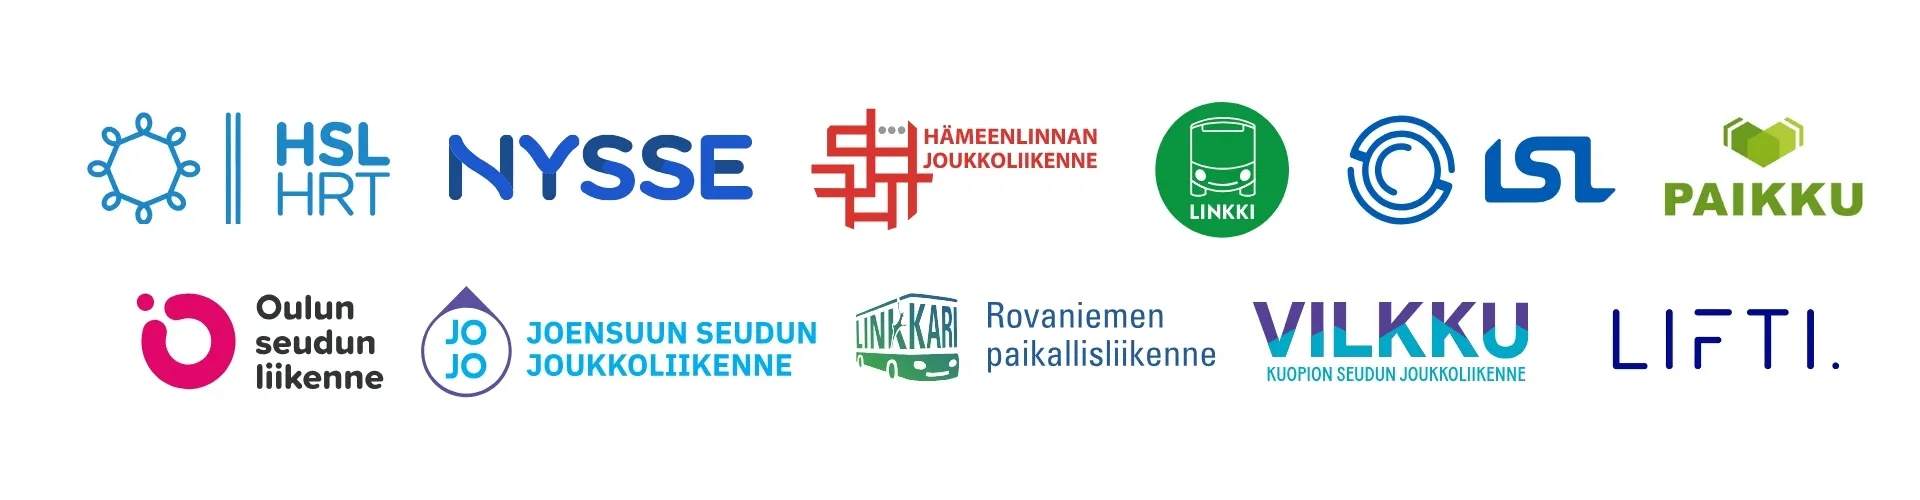 Logoja: HSL, Nysse, Hämeenlinnan joukkoliikenne, Linkki, LSL, Paikku, OSL, Joensuun seudun joukkoliikenne, Rovaniemen paikallisliikenne, Vilkku, Lifti